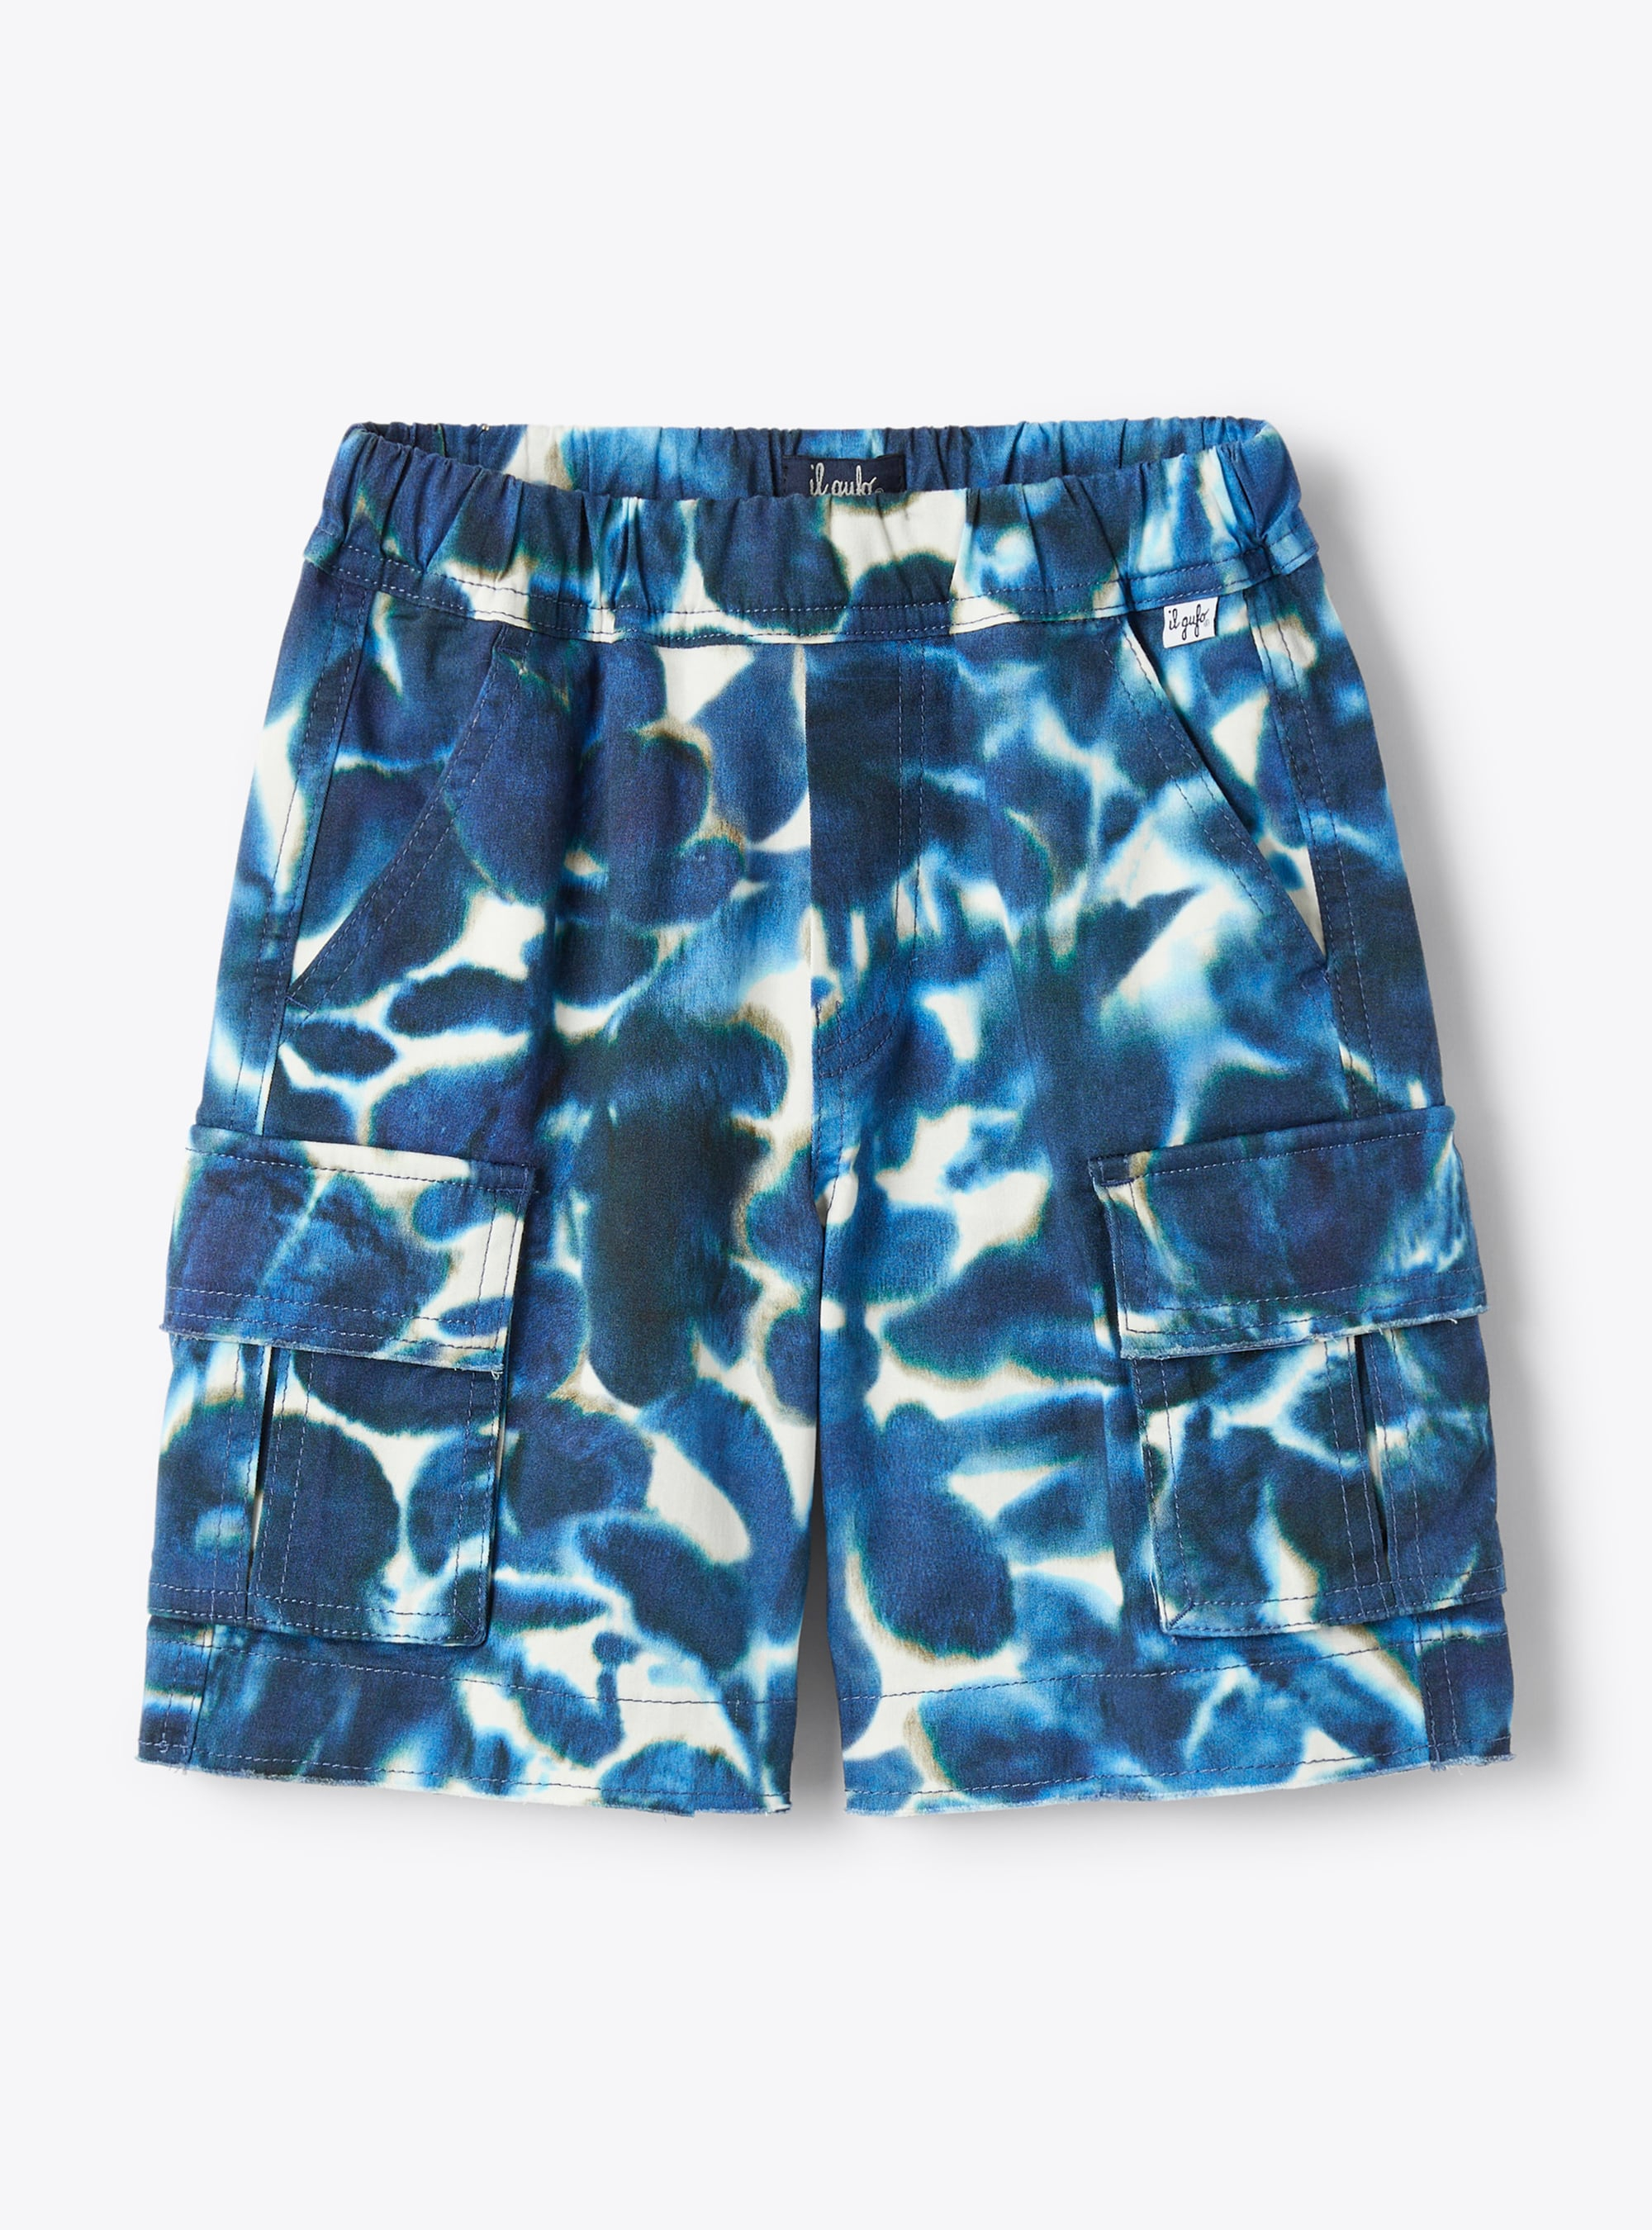 Cargo-style bermuda shorts in a blue tie-dye pattern - Blue | Il Gufo